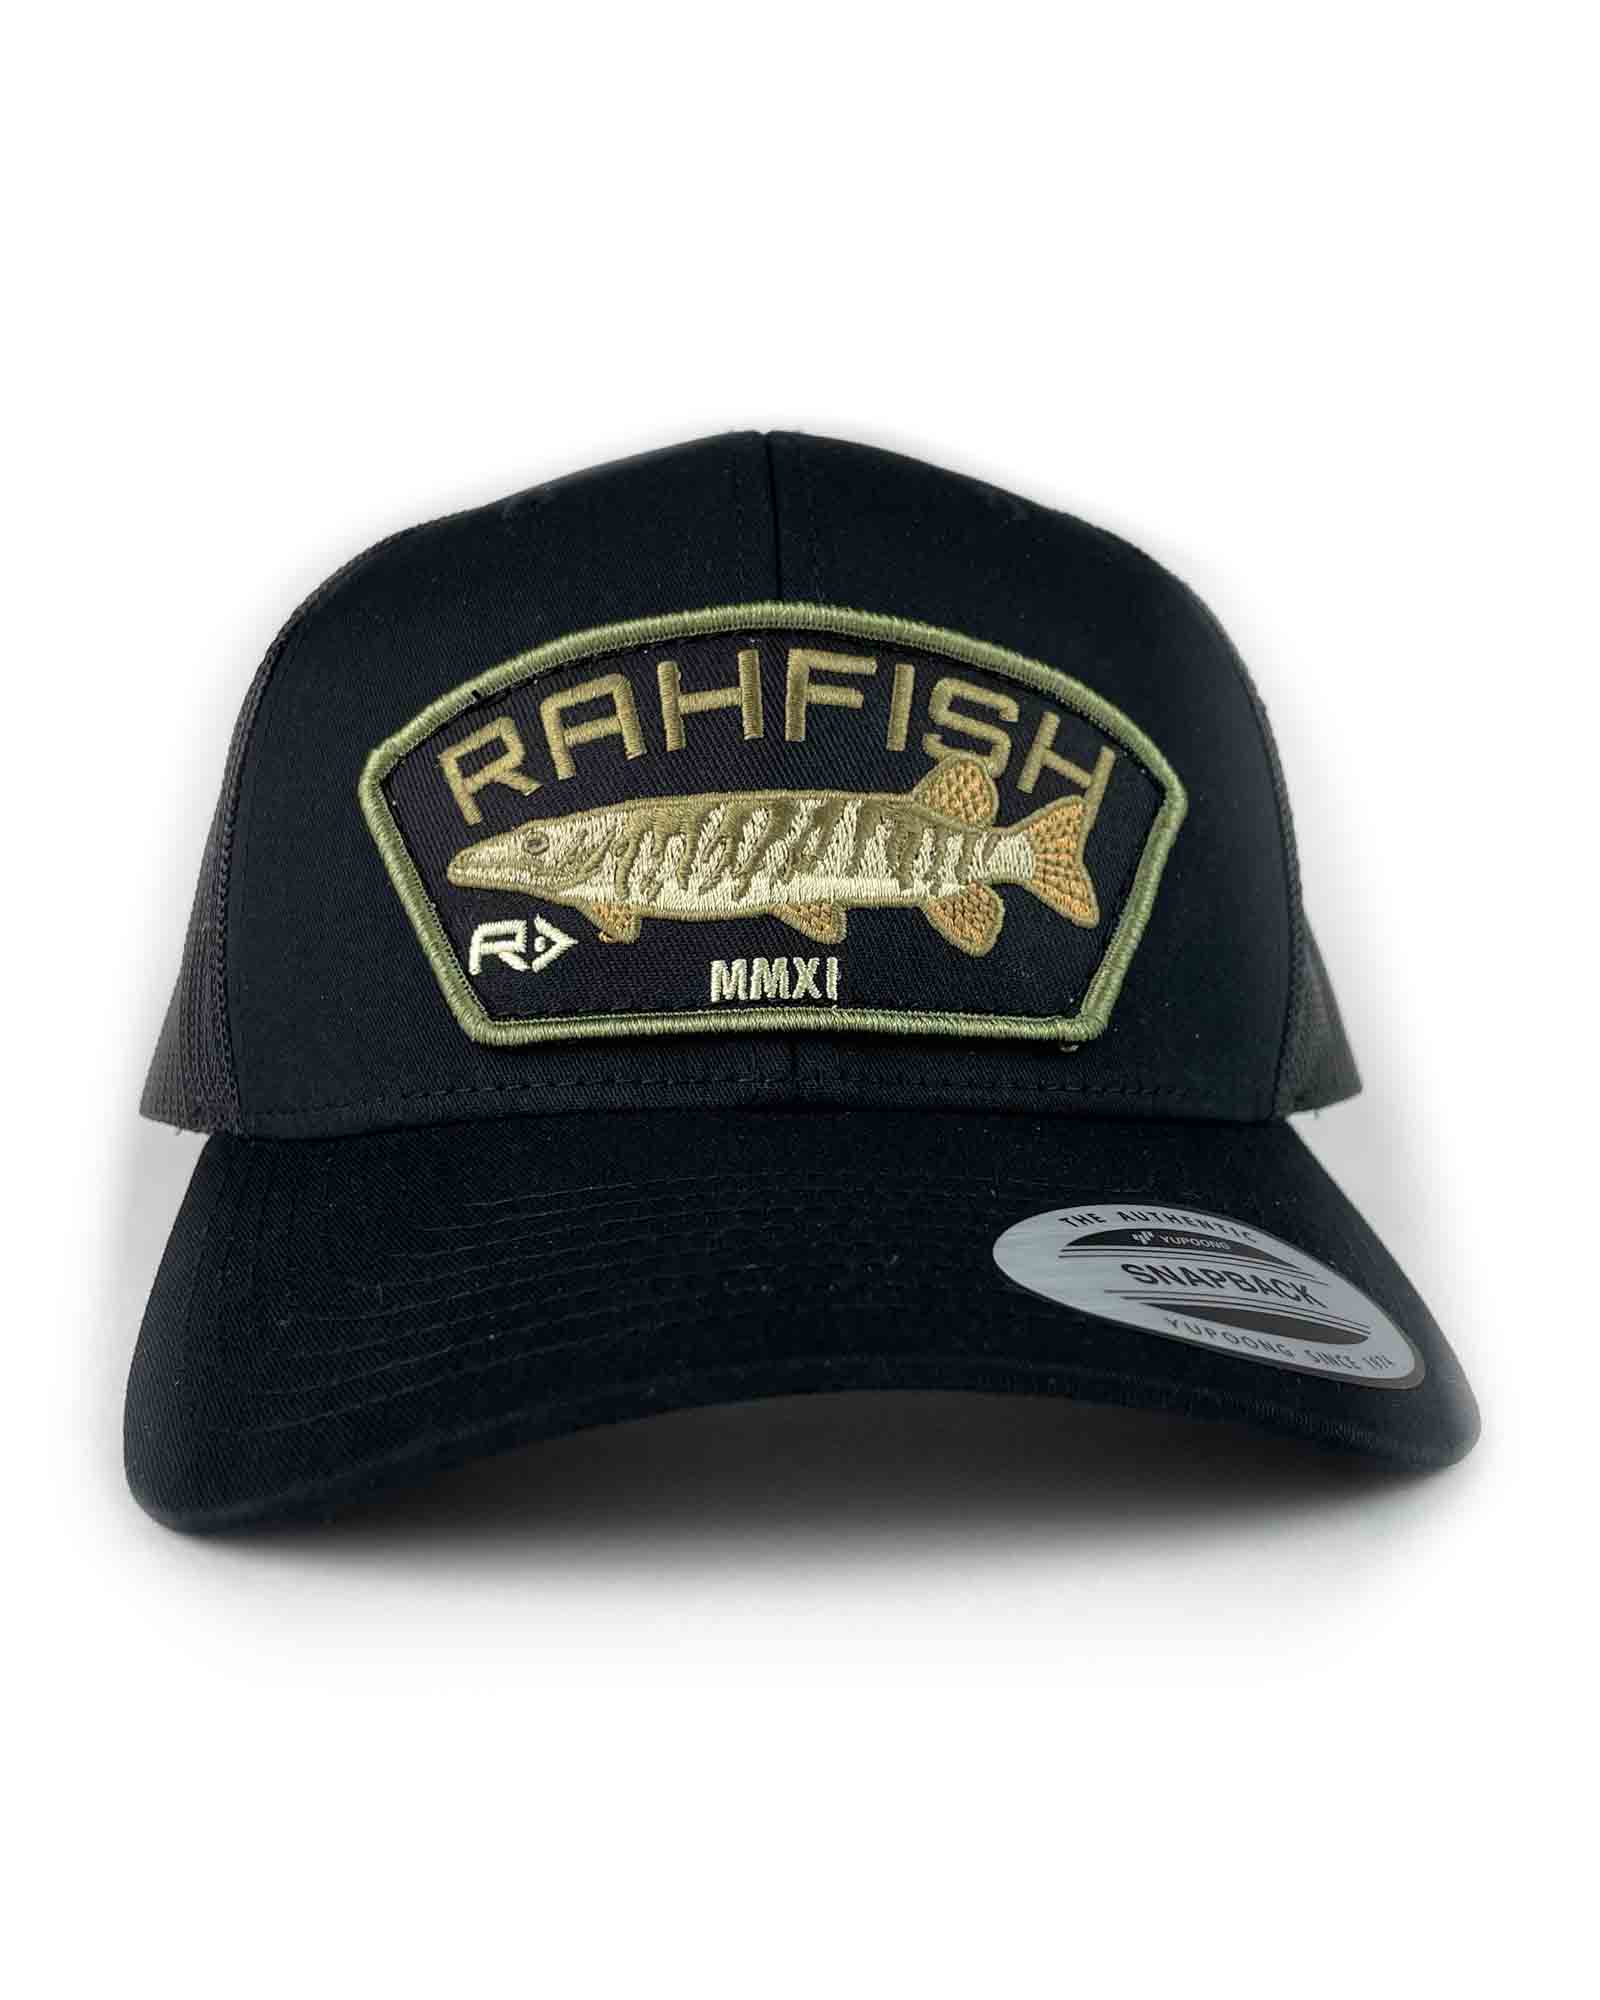 RAHFISH MUSKY TRUCKER HAT